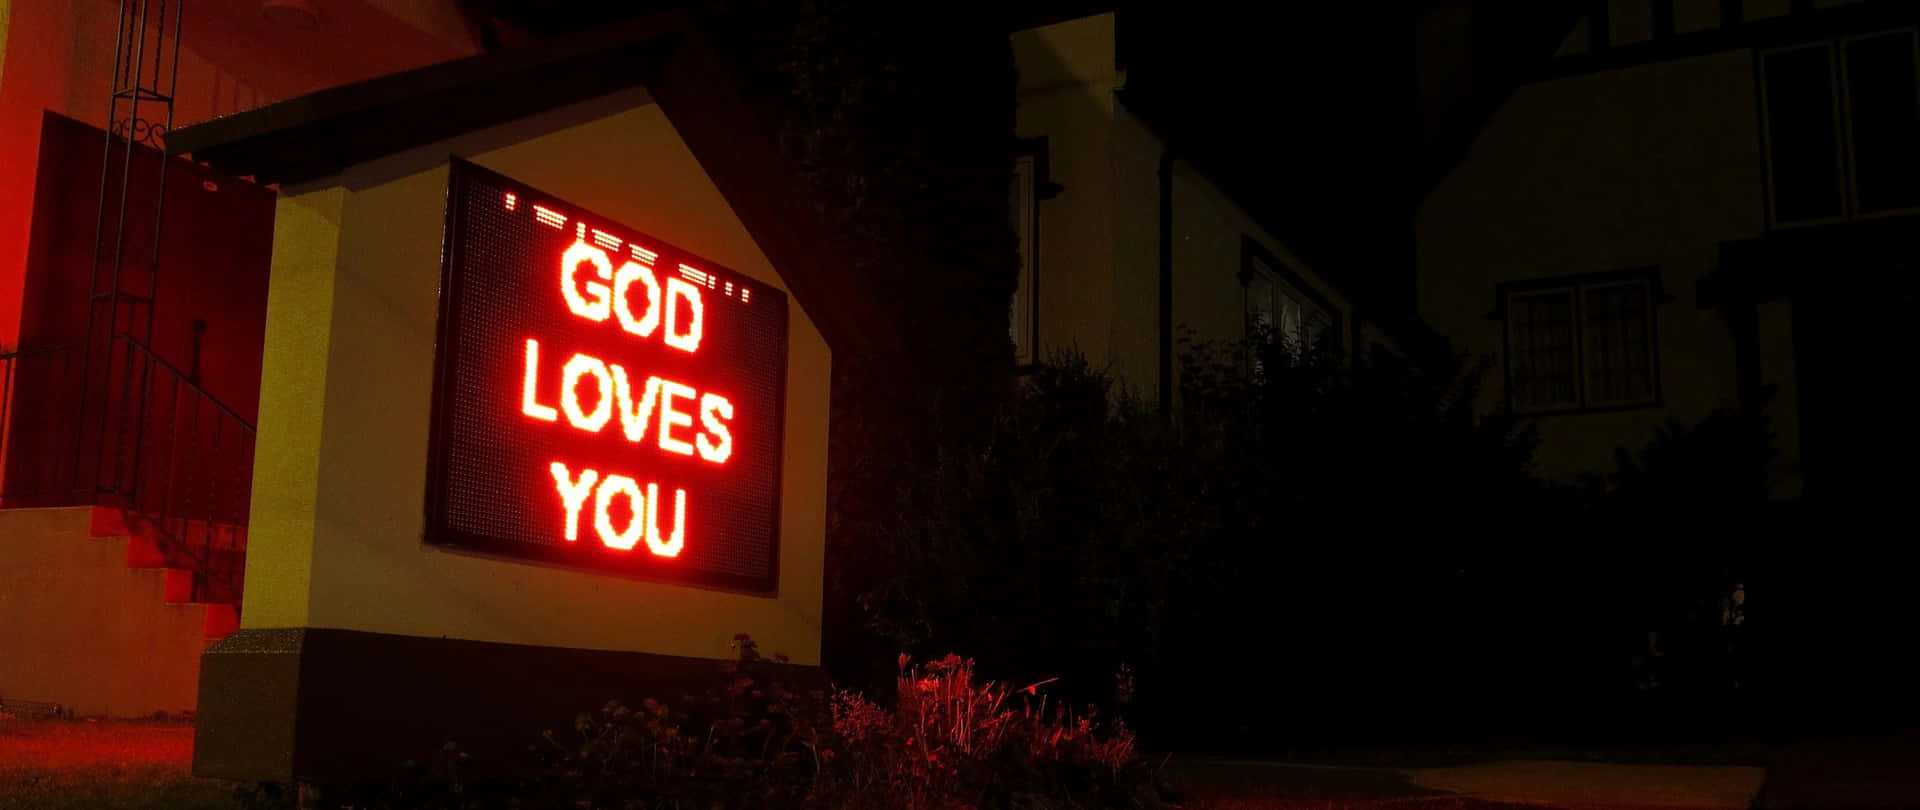 Gud elsker dig, og han er altid hos dig. Wallpaper